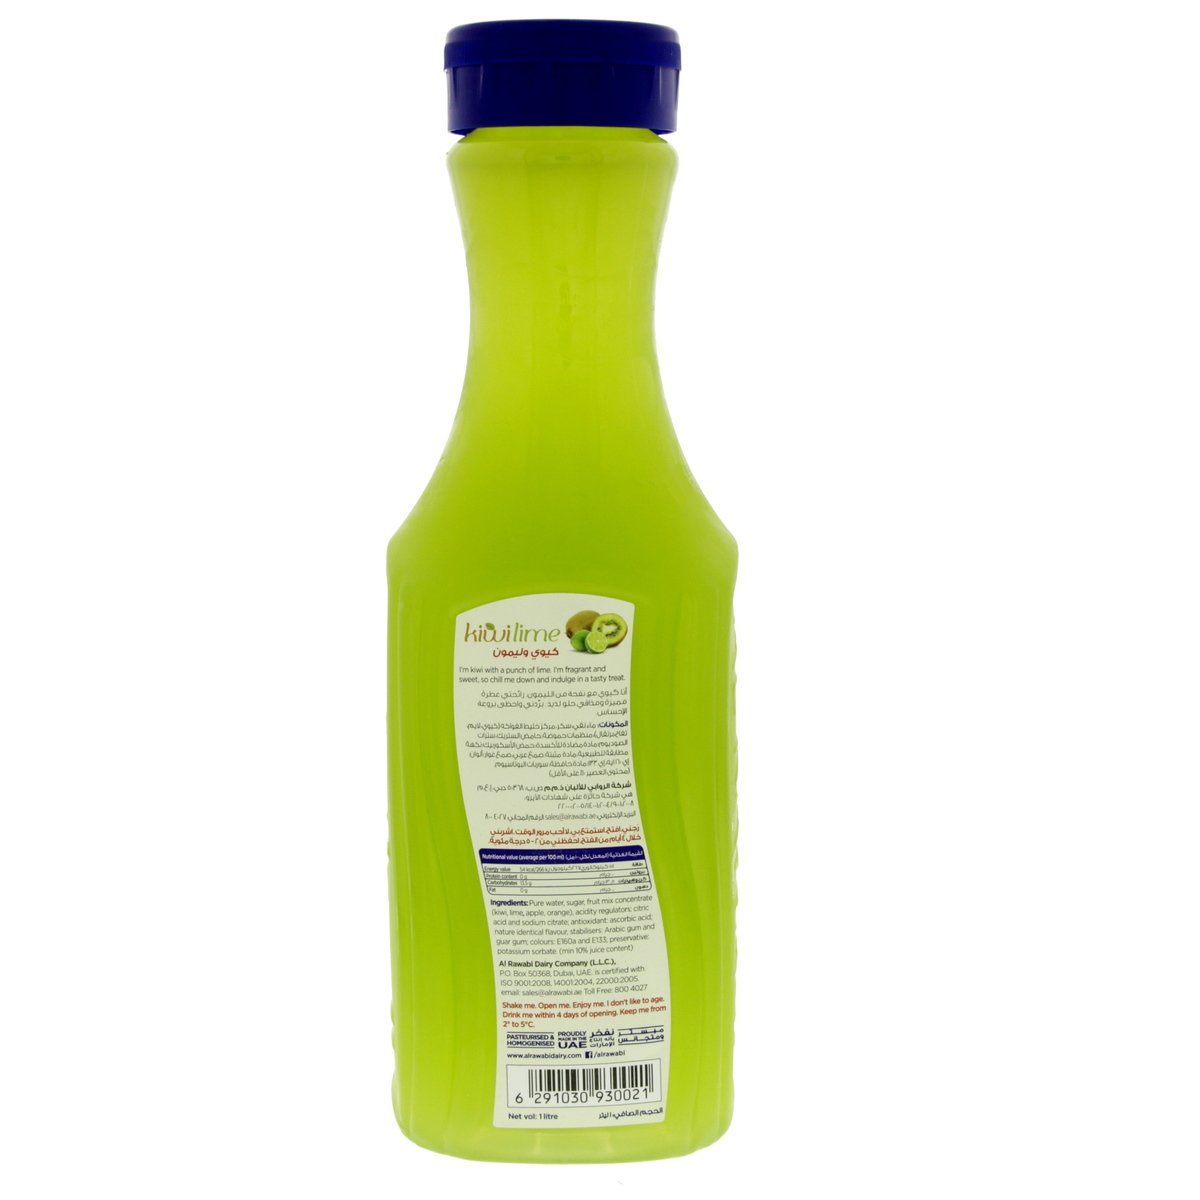 Al Rawabi Fresh & Natural Kiwi Lime Juice 1 Litre